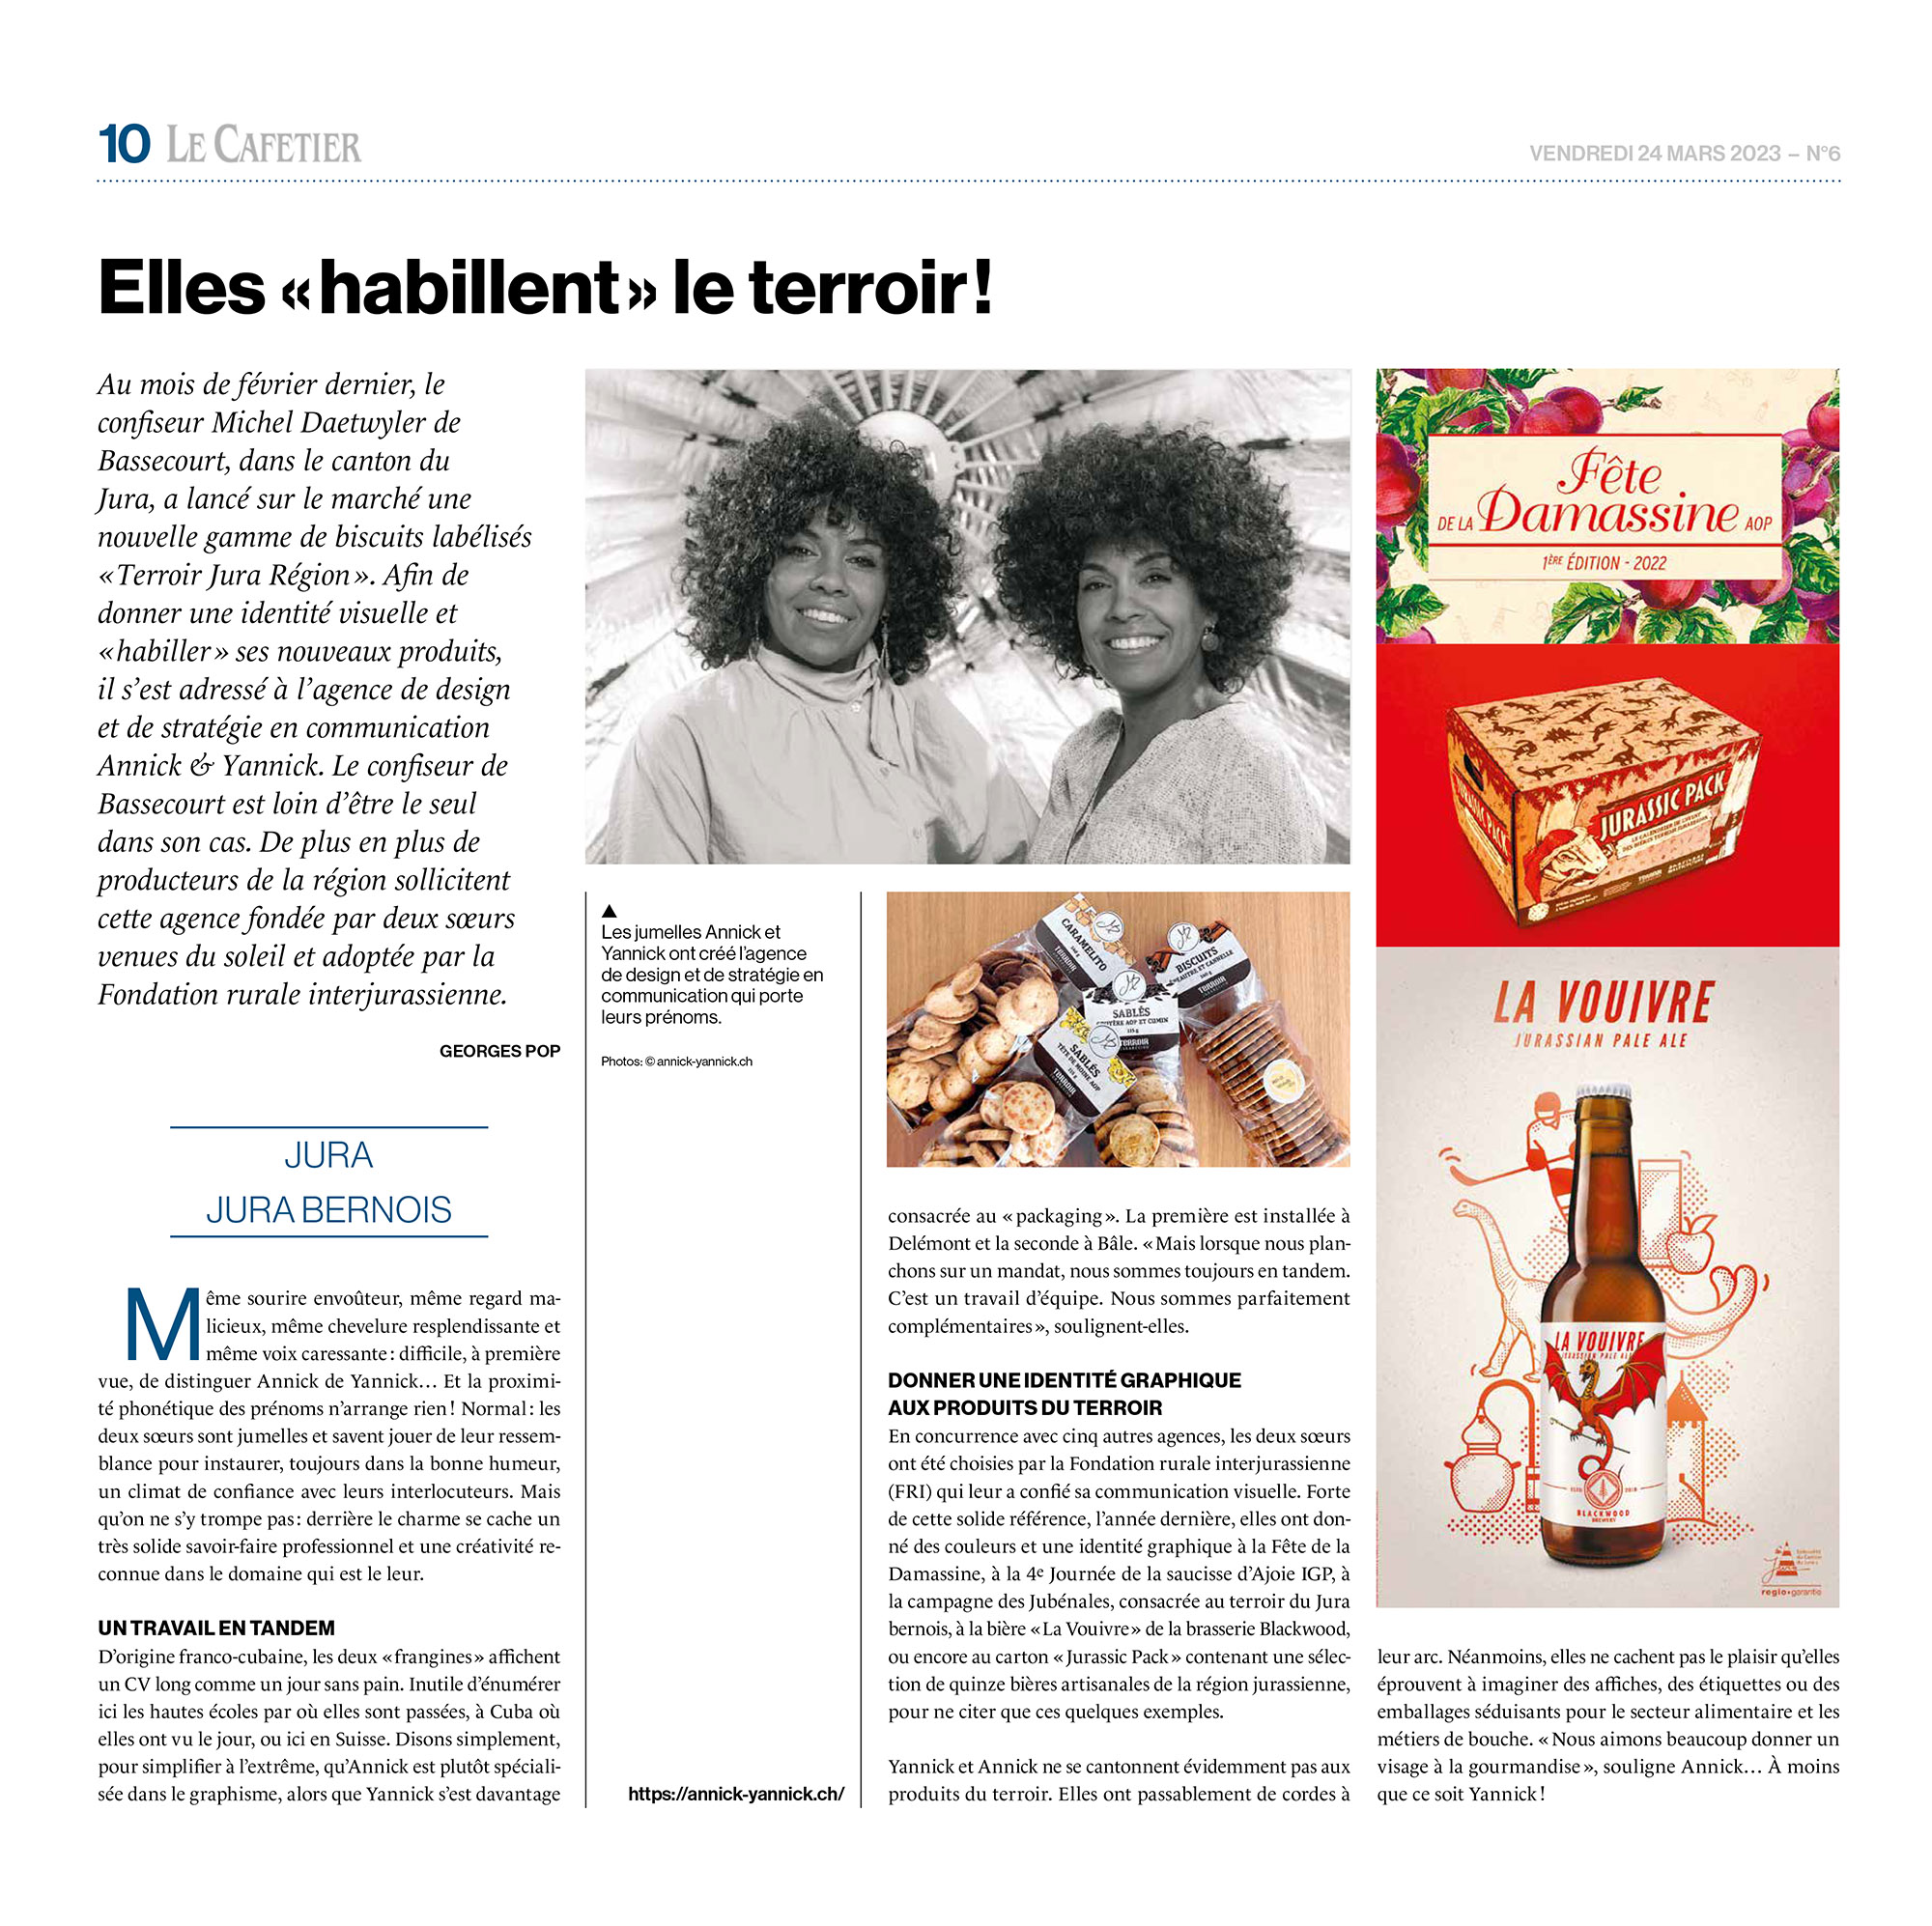 Annick & Yannick. Agence de design. Article dans le journal Le Cafetier, Genève, mars 2023.